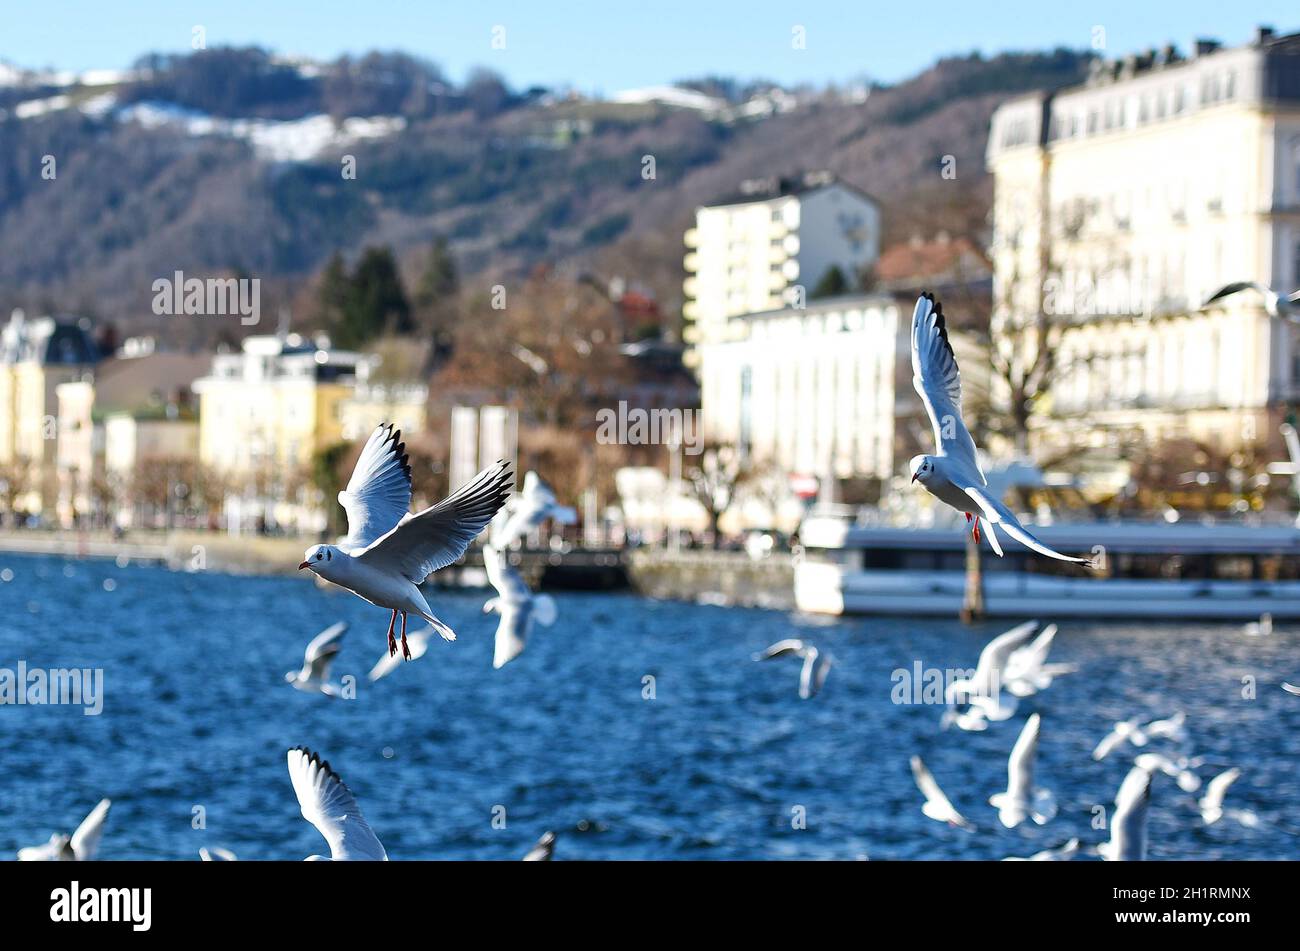 Viele Möwen in Gmunden am Traunsee im Winter, Salzkammergut, Österreich, Europa - Many seagulls in Gmunden am Traunsee in winter, Salzkammergut, Austr Stock Photo